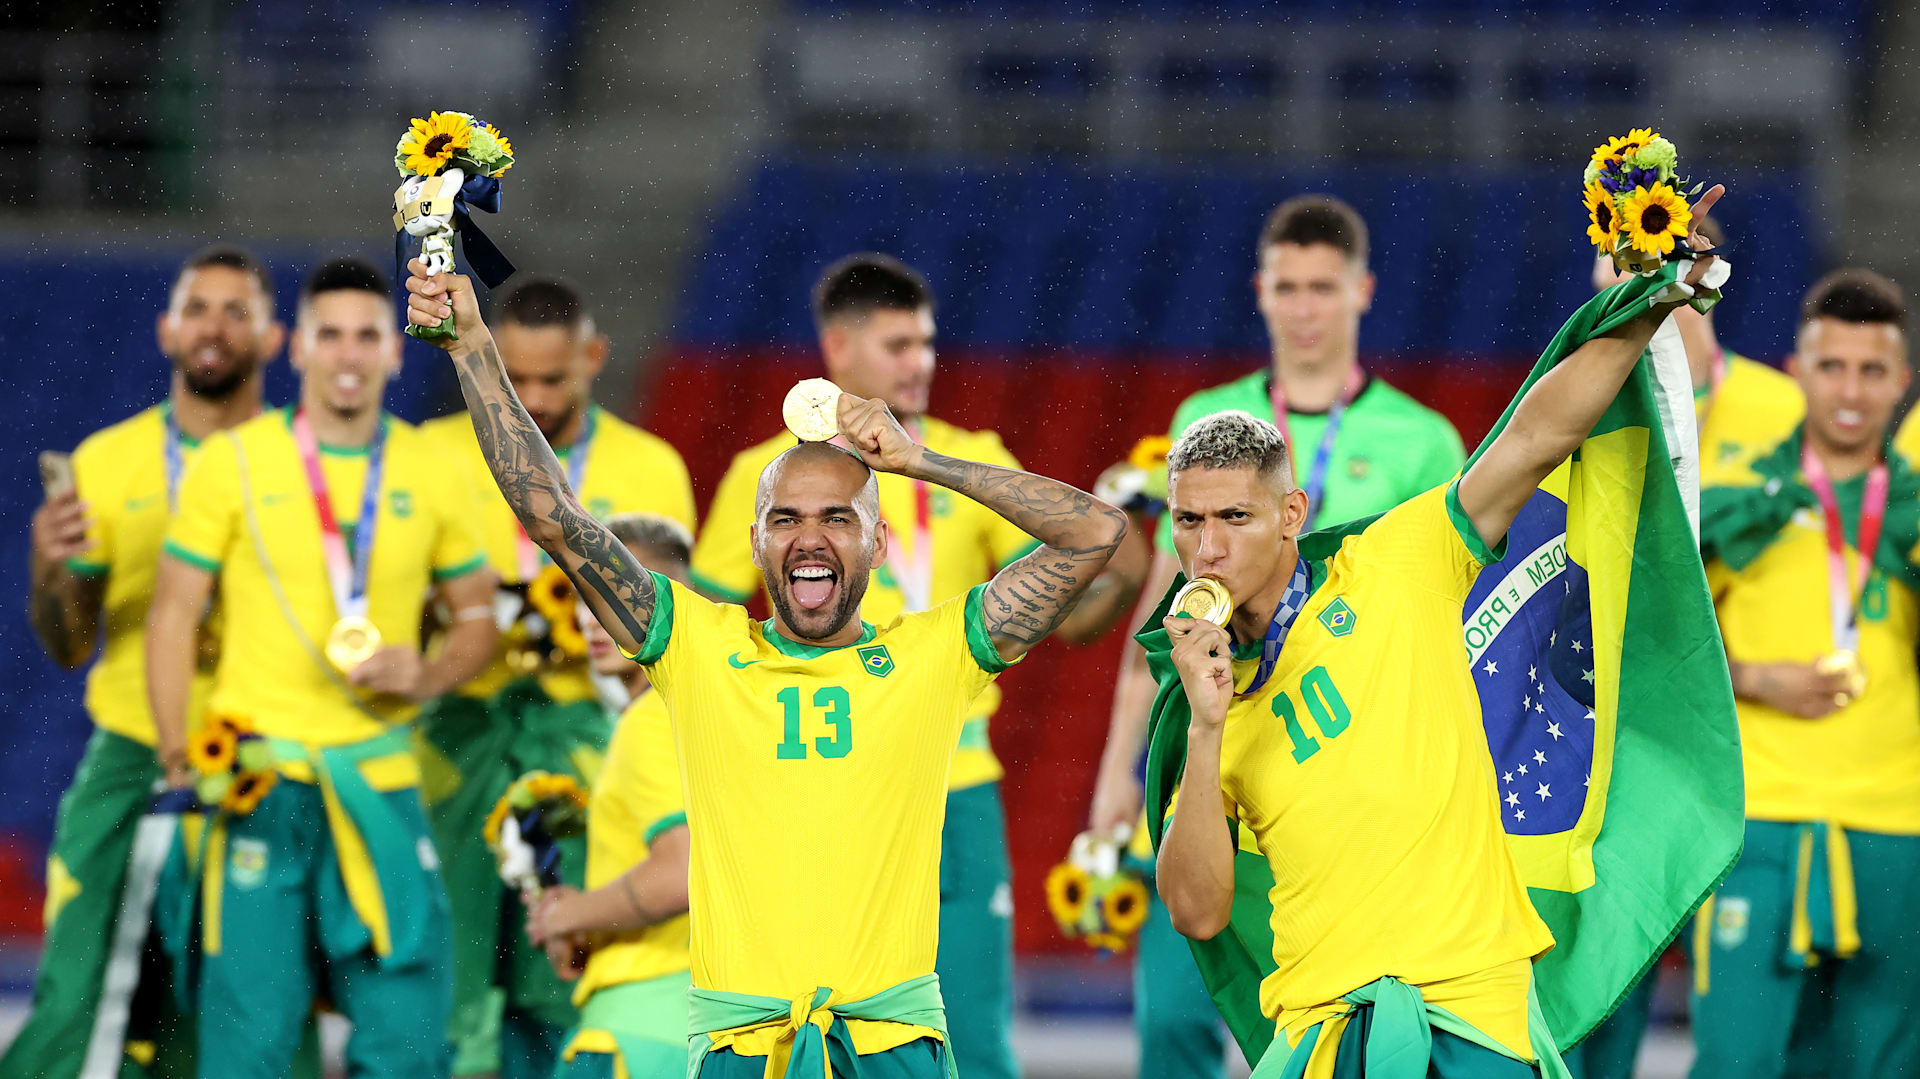 Champions: os 10 brasileiros com mais jogos na competição